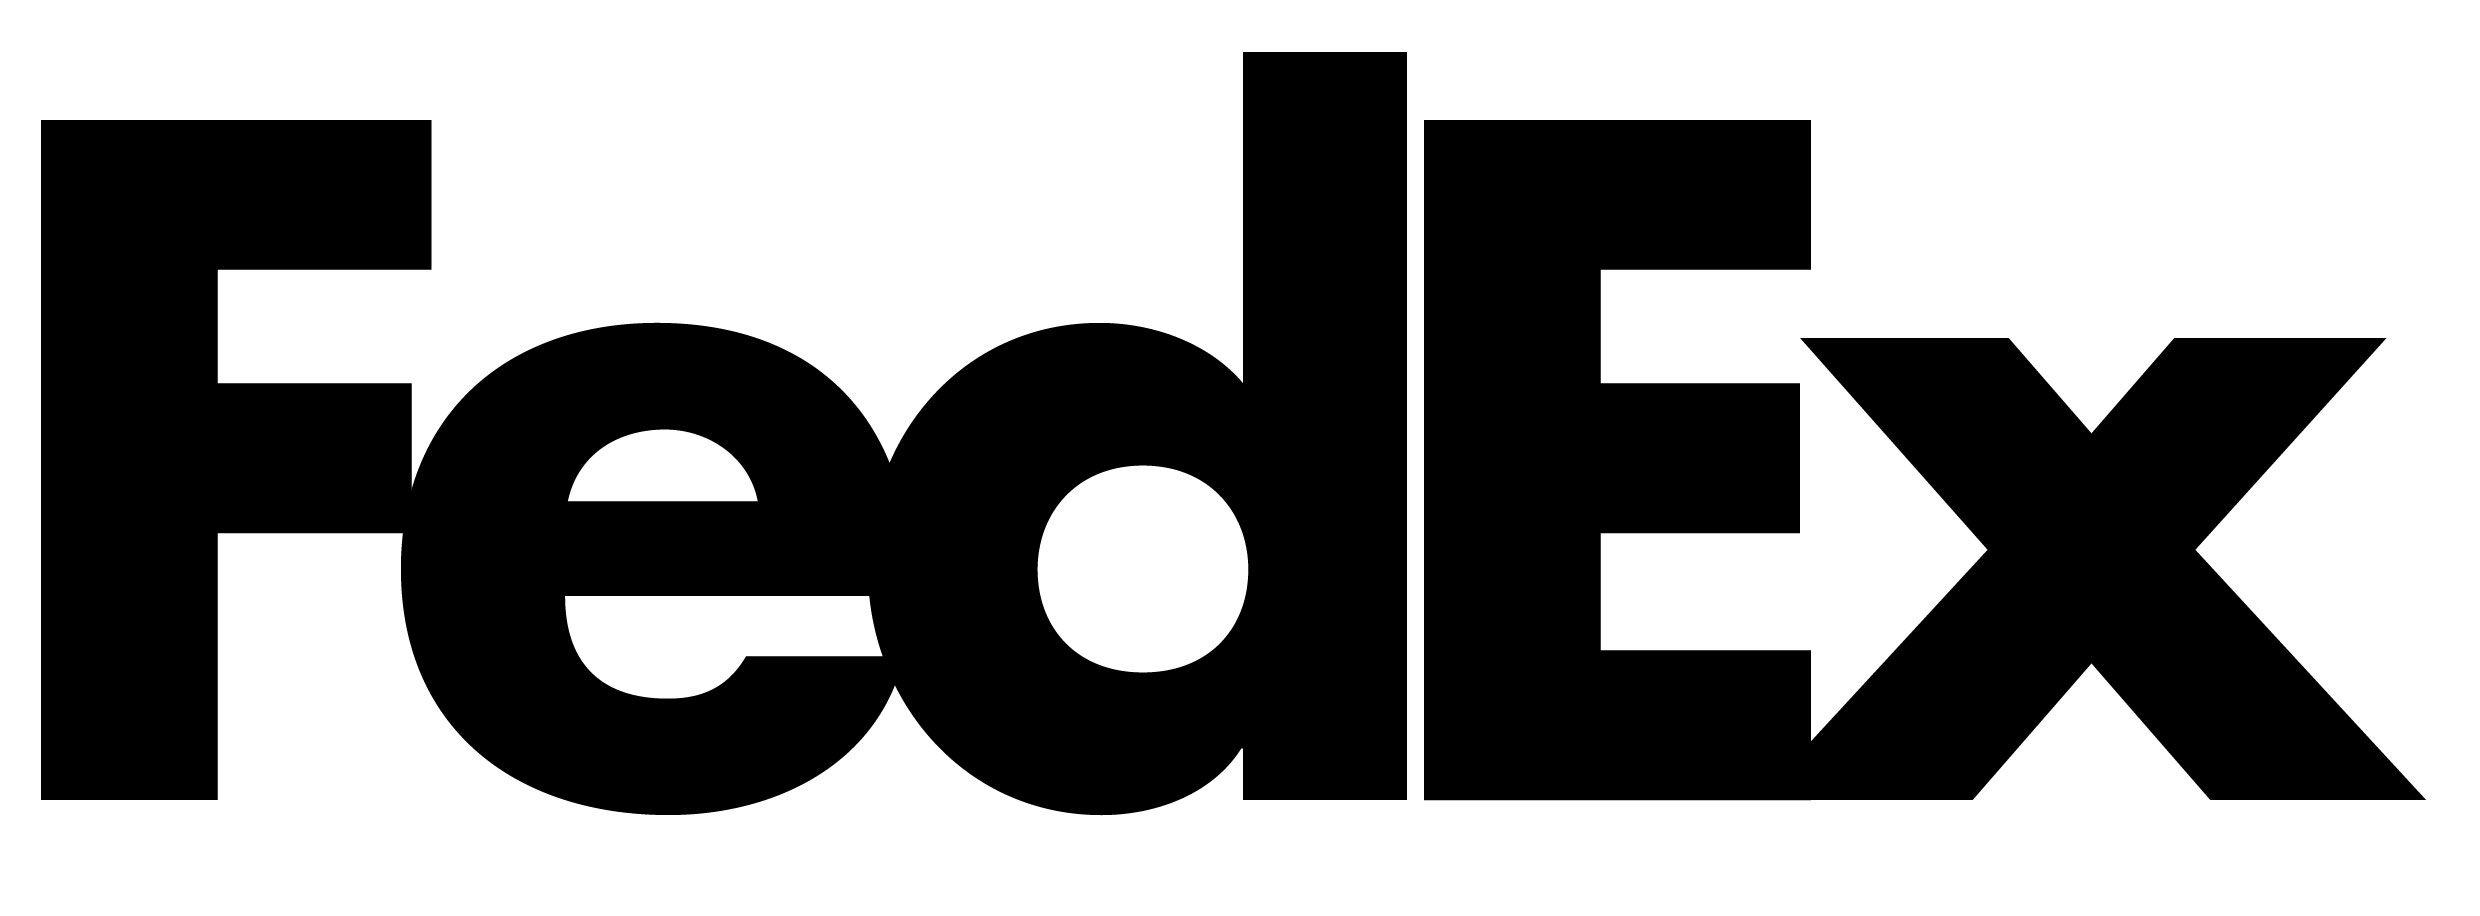 FedEx Logo - FedEx | What's That Font?